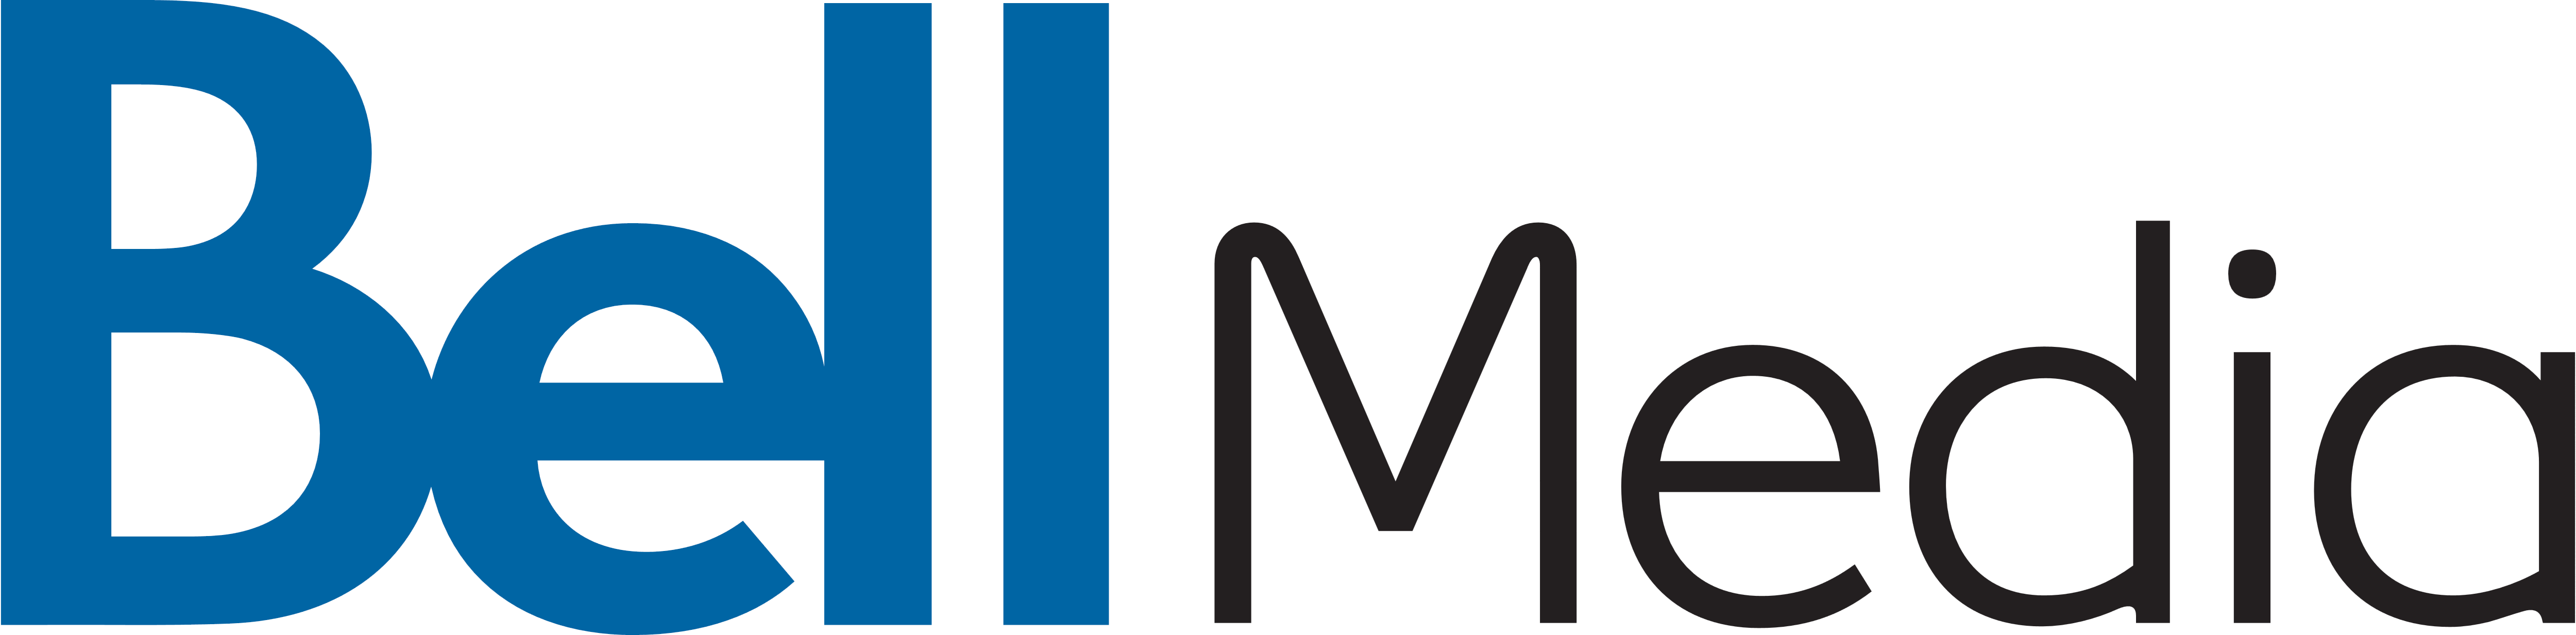 Bell Media Logo